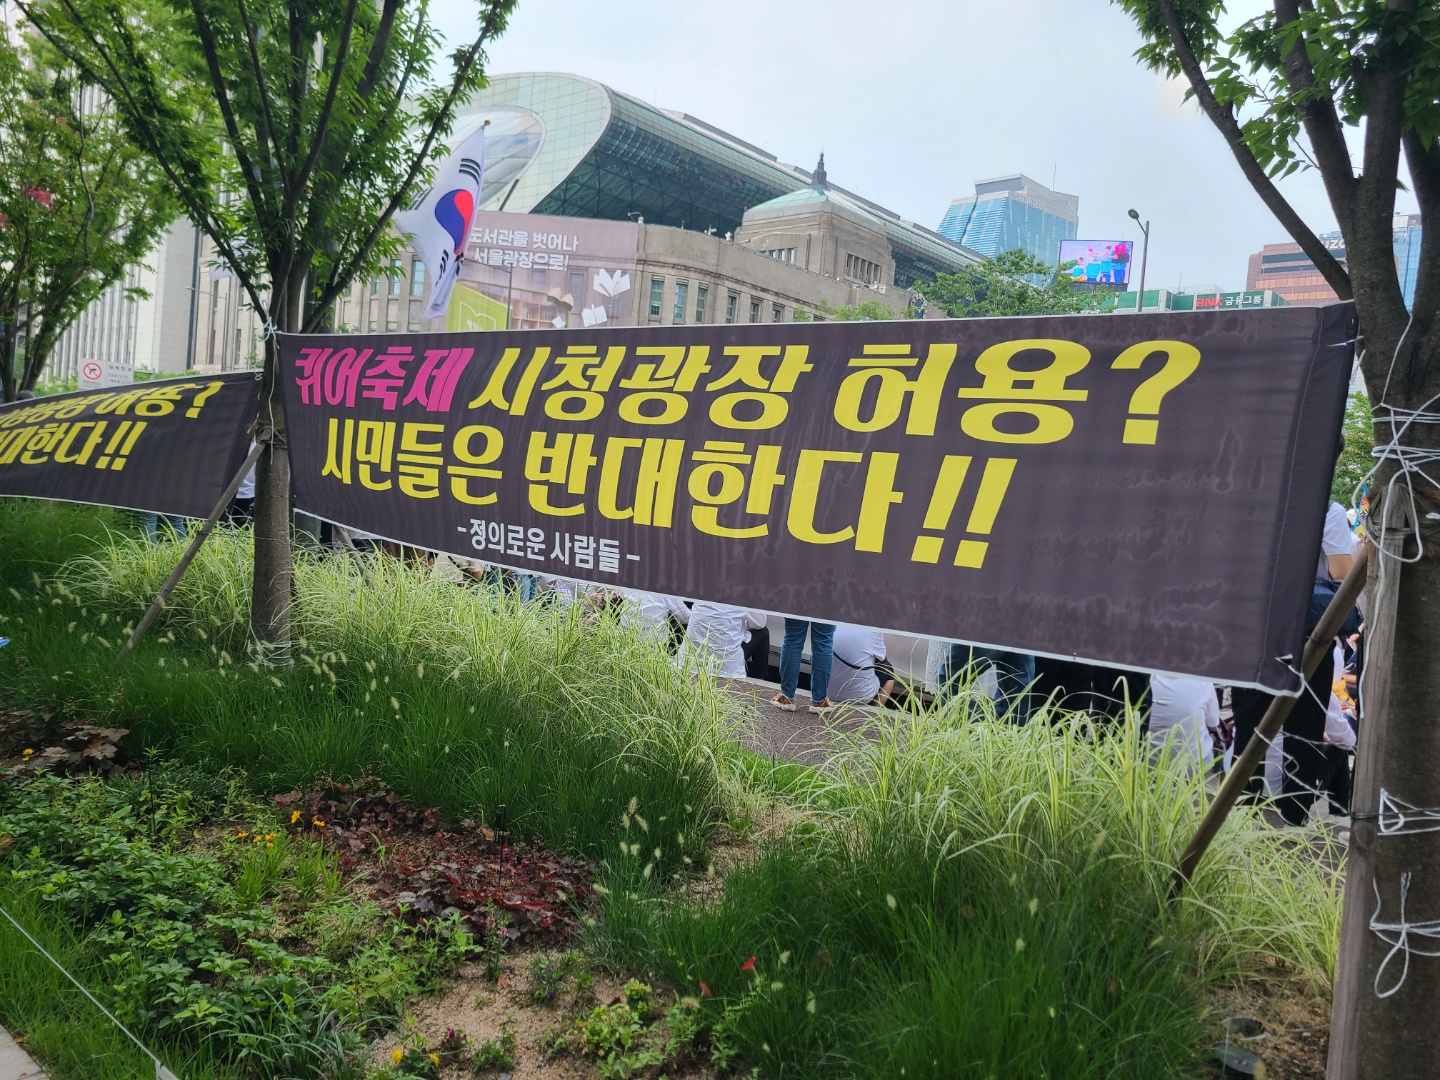 ‘정의로운 사람들’이라는 단체가 서울광장에서 퀴어축제가 열리는 것을 반대한다는 현수막을 서울 중구 대한문 인근에 걸어놨다. 유대근 기자